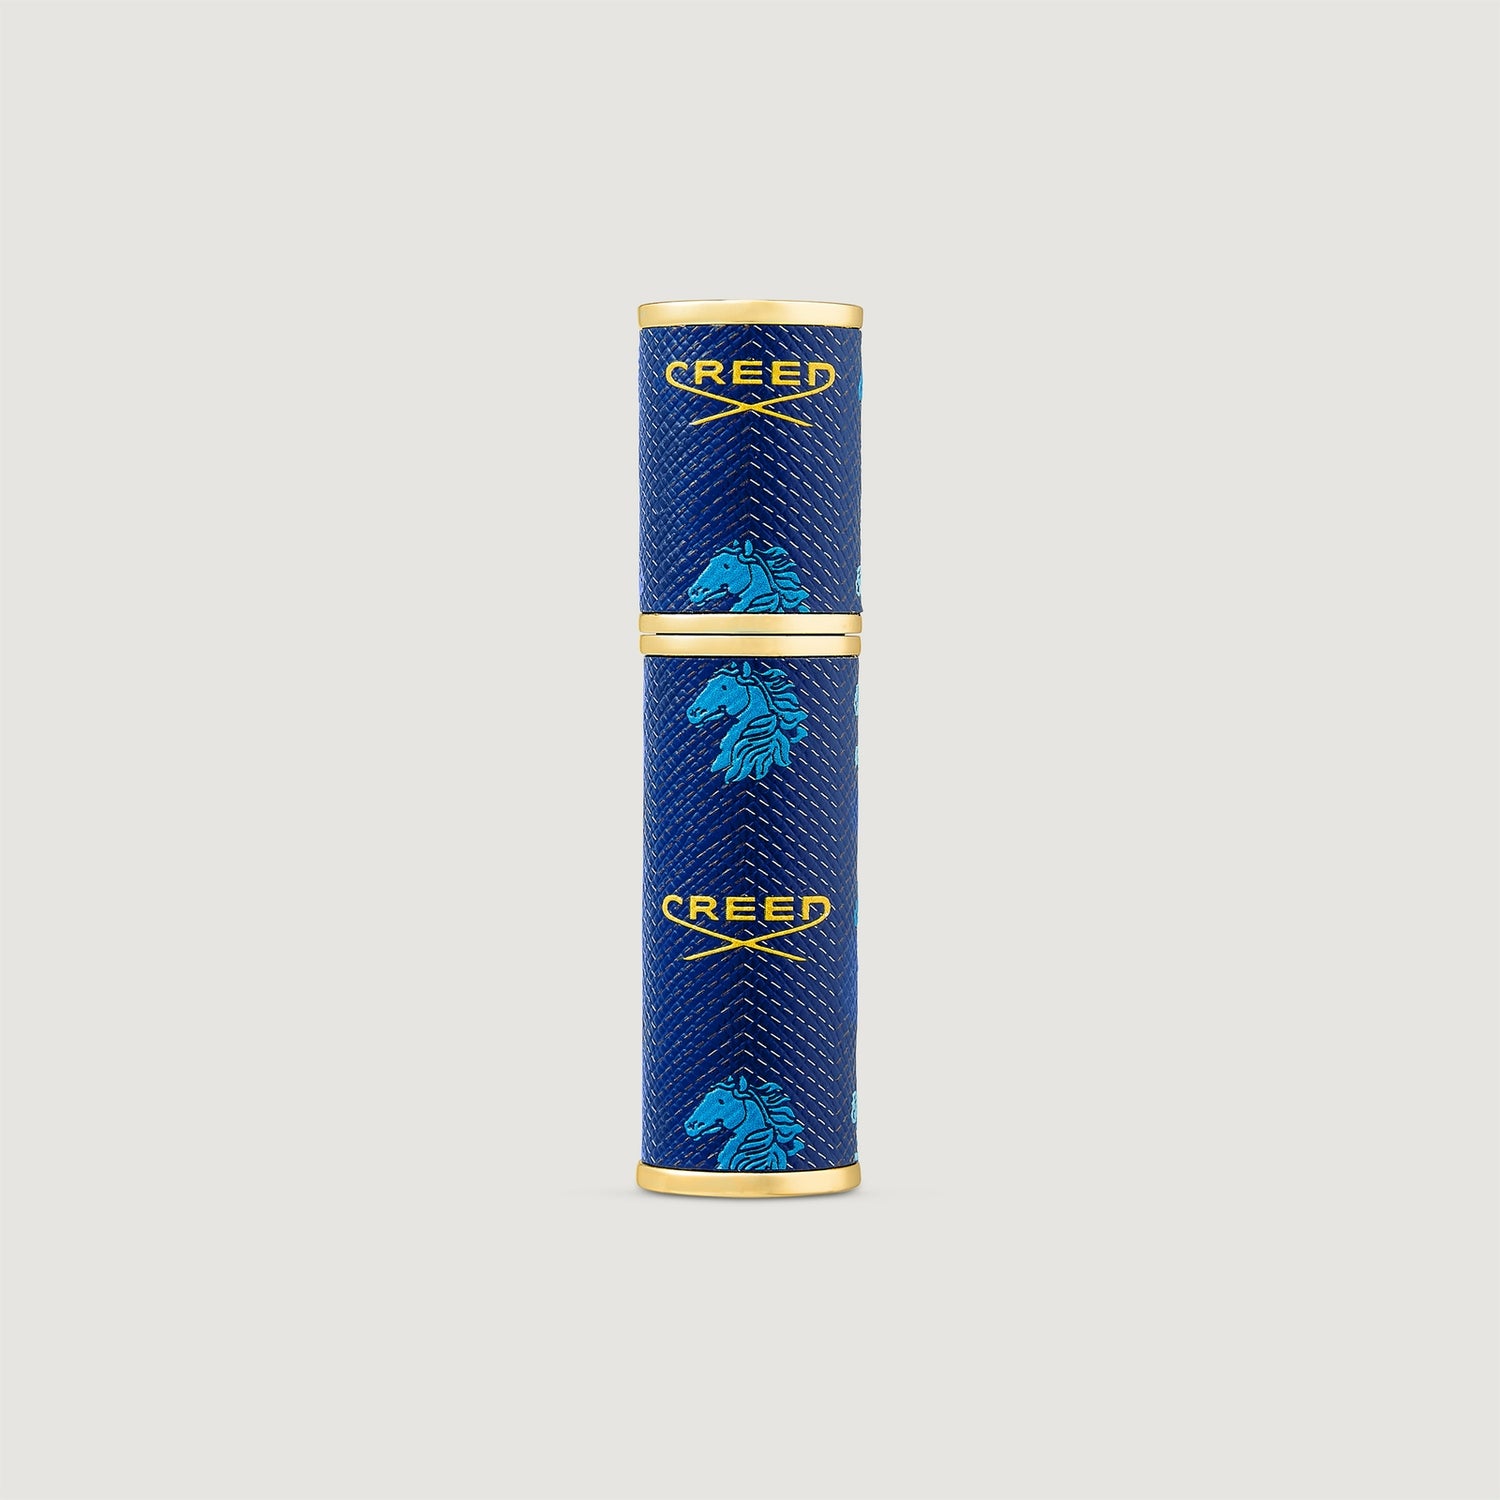 Nachfüllbarer 5 ml Parfümzerstäuber für unterwegs - Blau